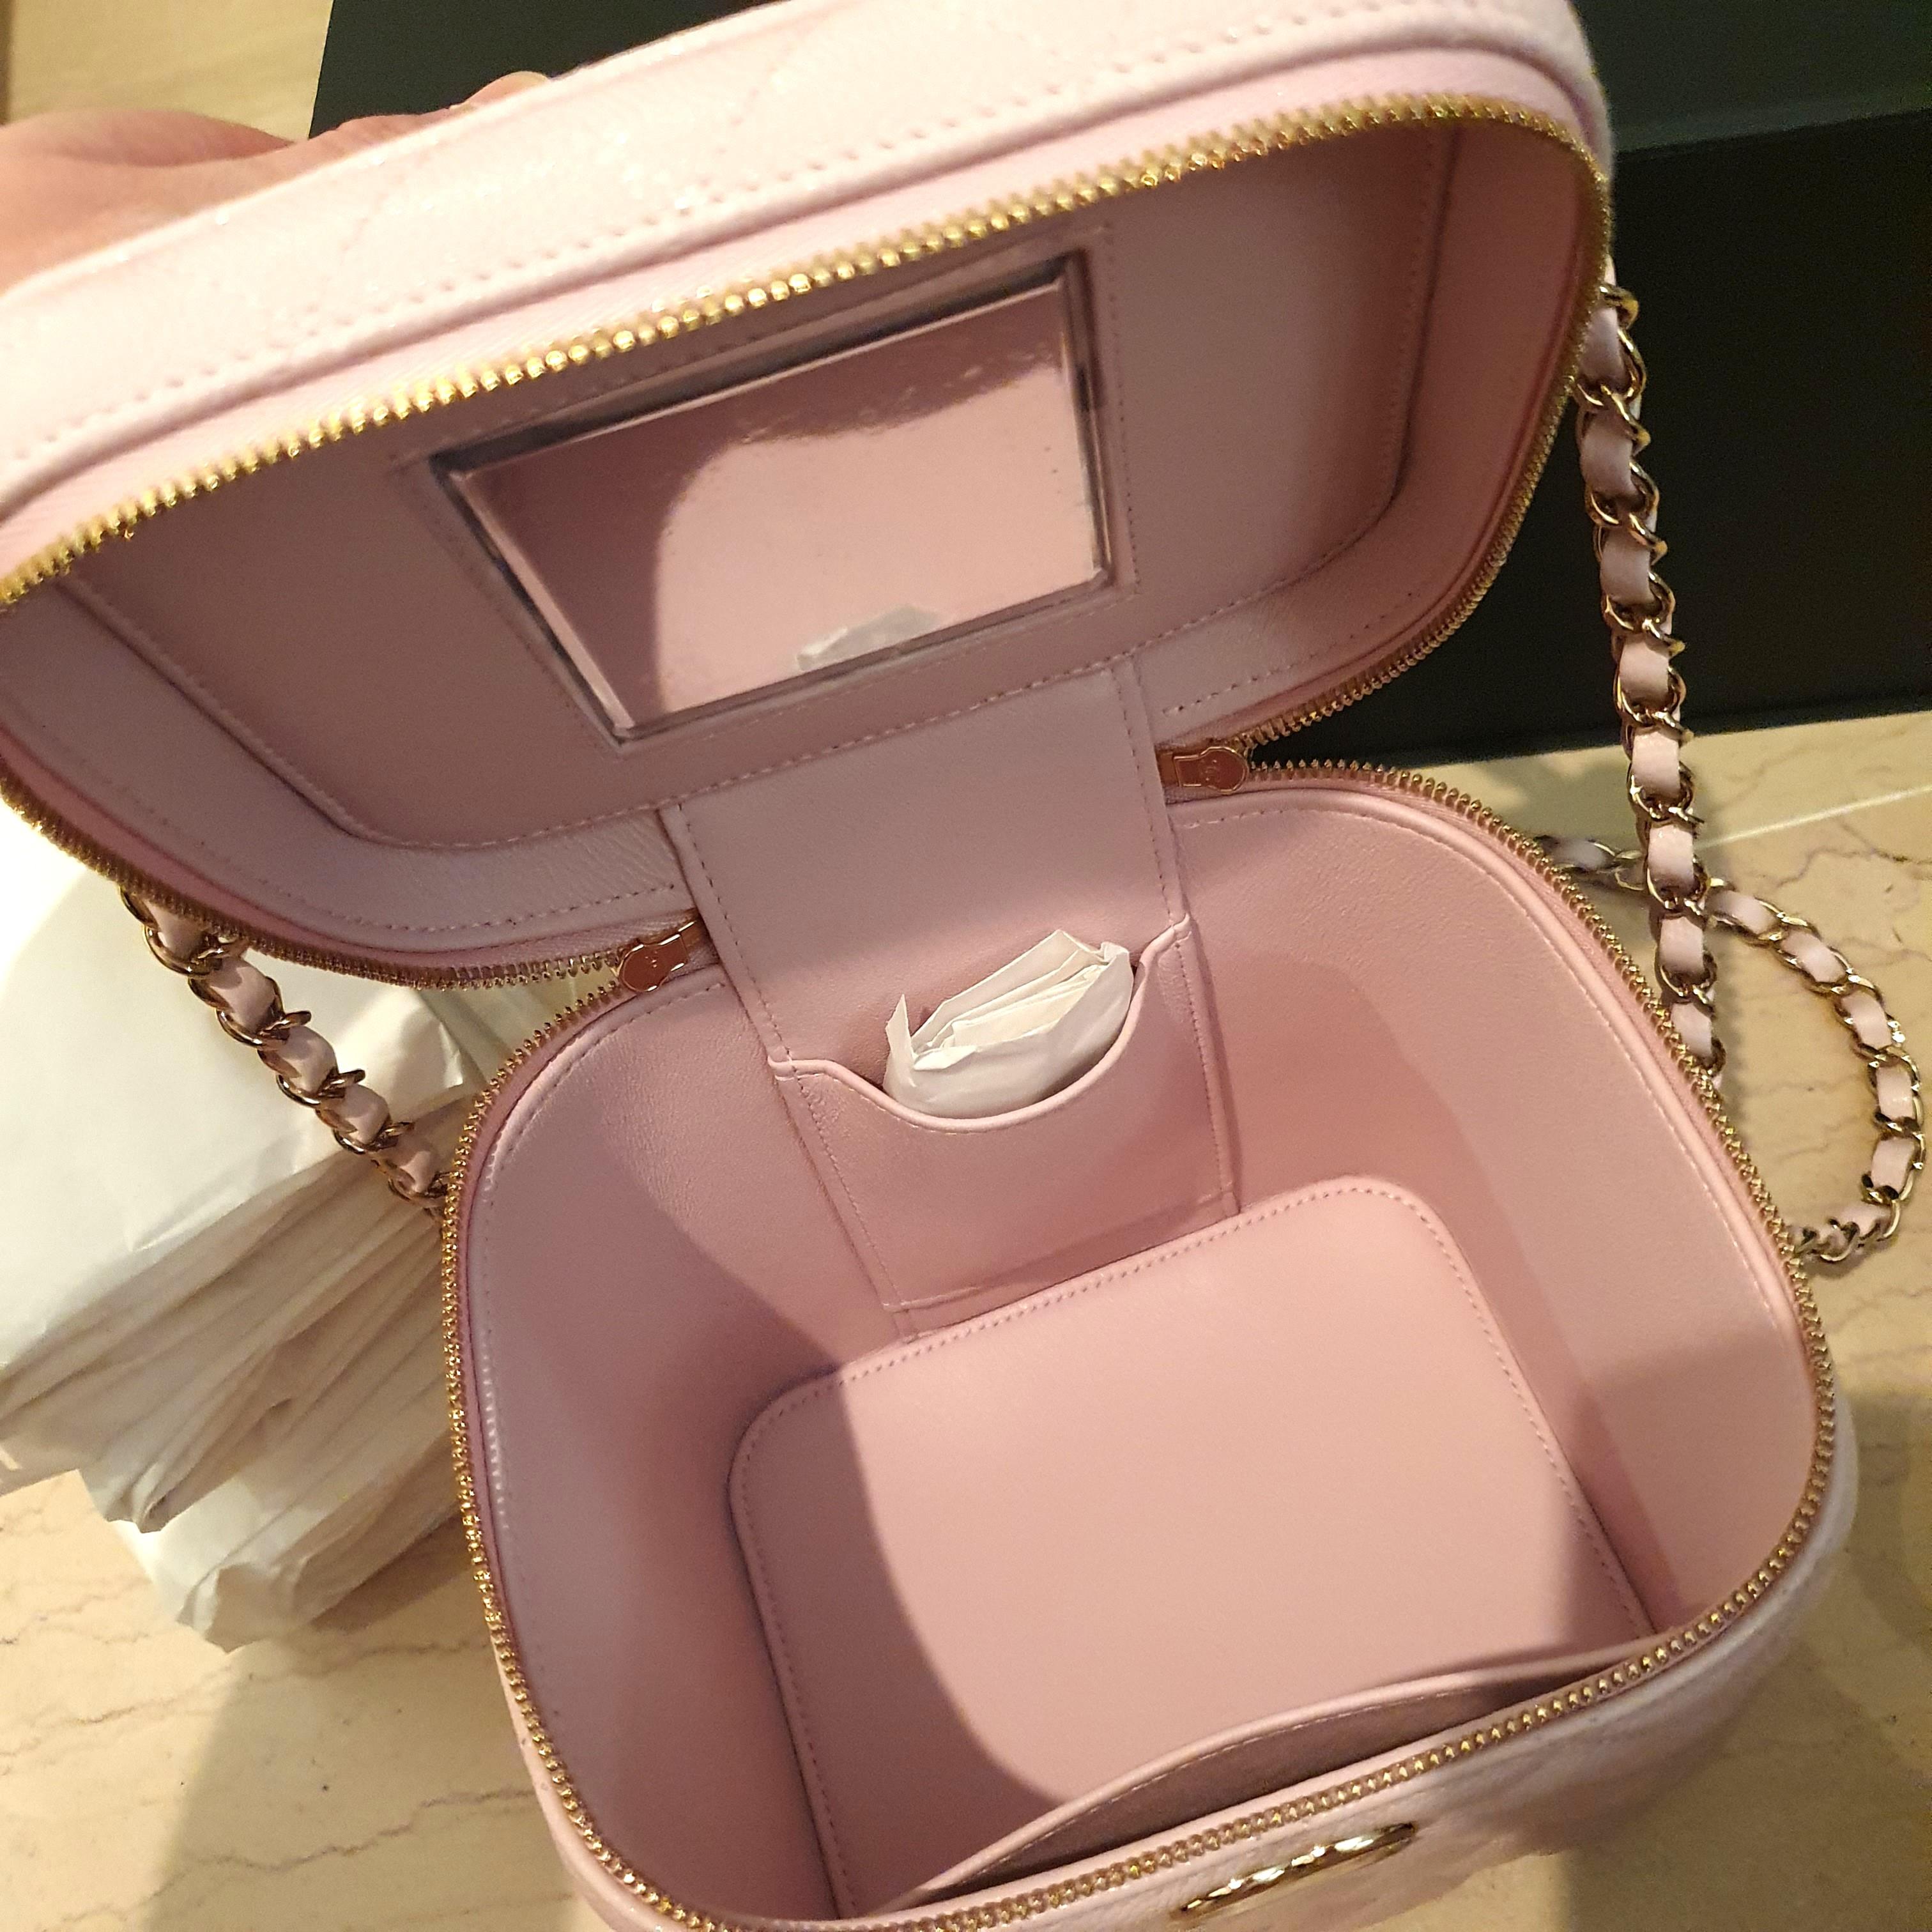 Chanel COMPARISONS Vanity Cosmetic Pouch VS LV Mini Pochette 21C Rose  Claire Unboxing #luxurypl38 